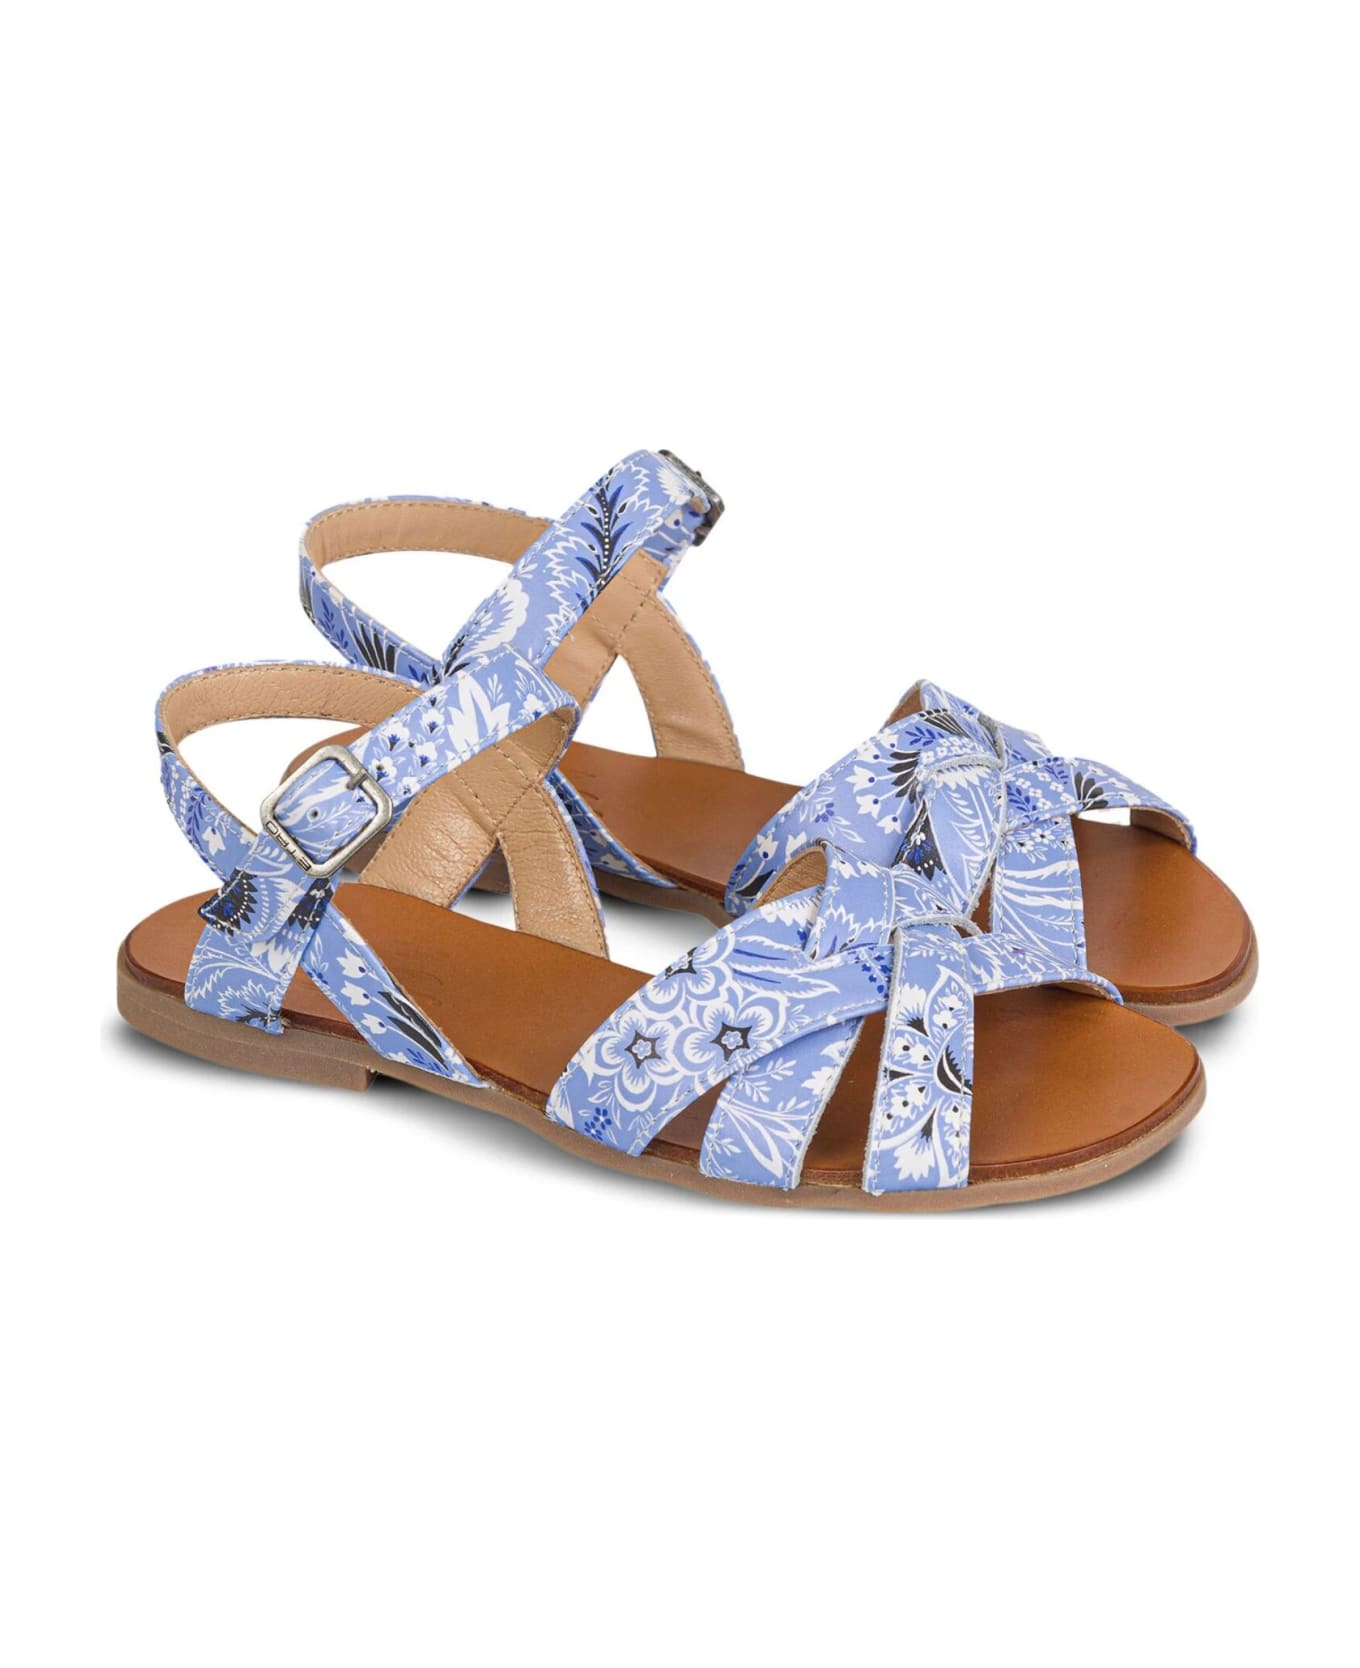 Etro Light Blue Sandals With Paisley Motif - Blue